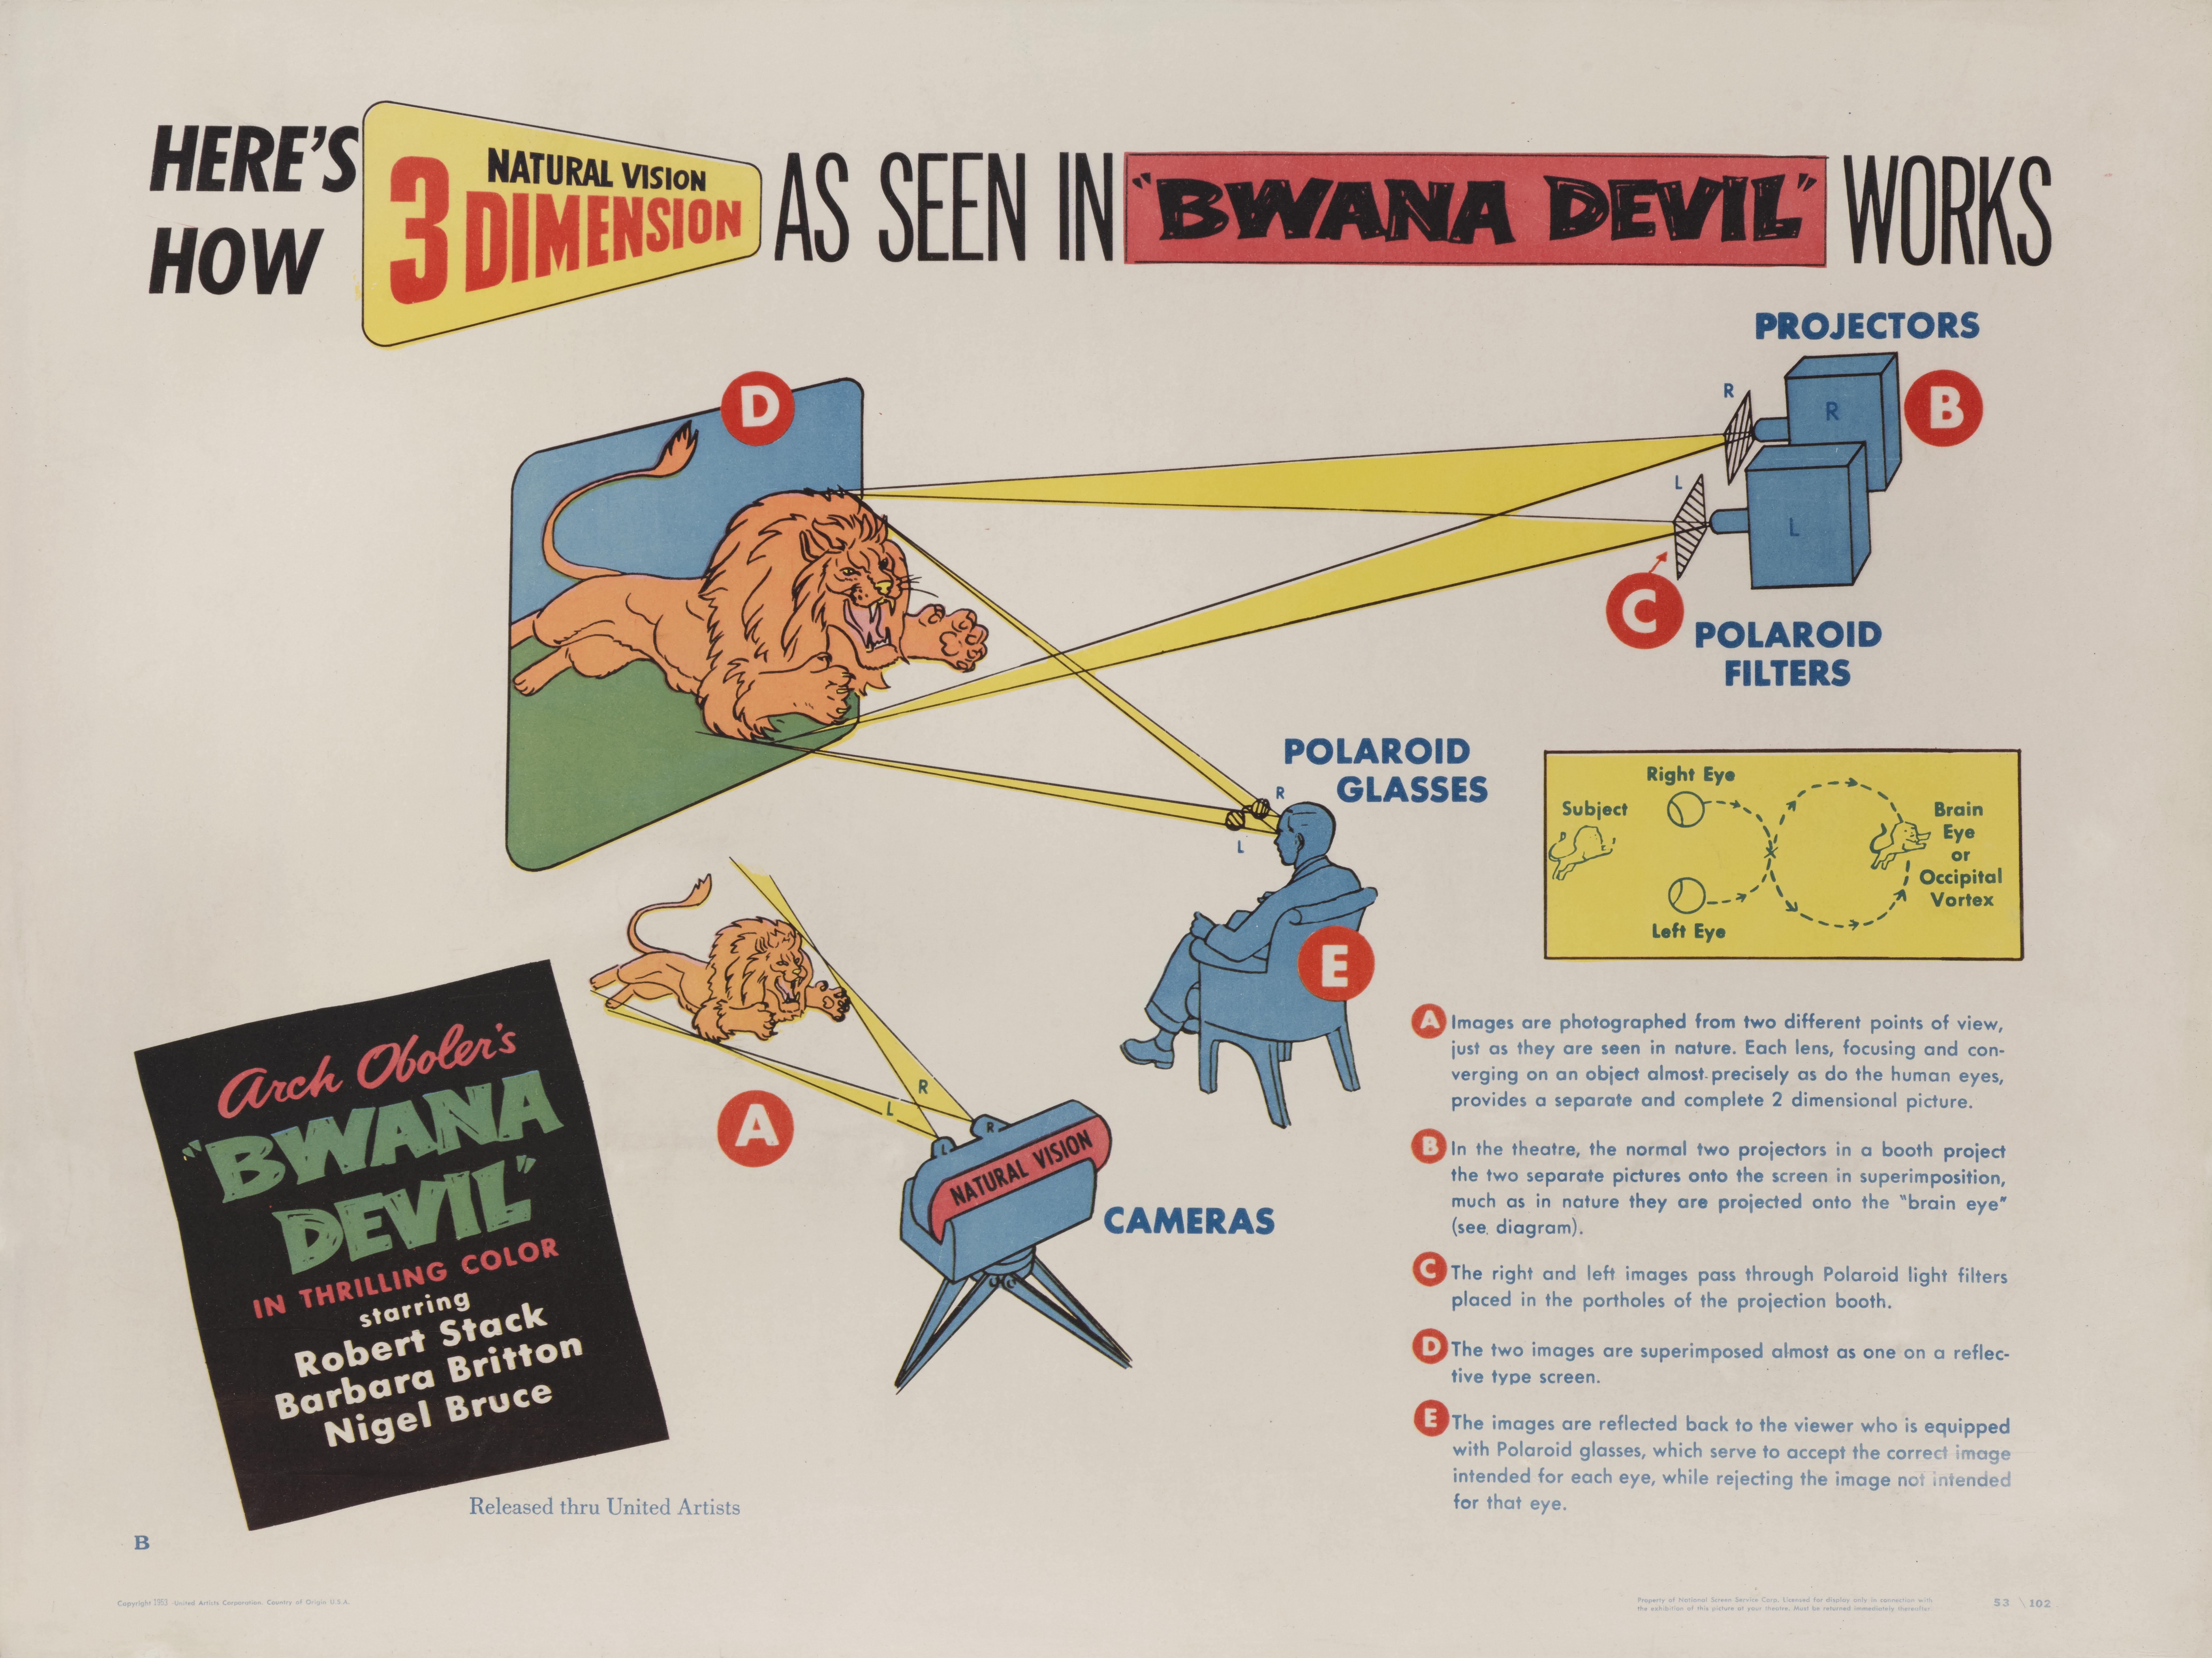 Original US-Filmplakat für den 3-D-Abenteuerfilm Bwana Devil von 1953 mit Robert Stack, Barbara Britton und Nigel Bruce in den Hauptrollen. Bei dem Film führten Arch Oboler und Robert Clampett Regie.
Dieses seltene Filmplakat, das zeigt, wie die